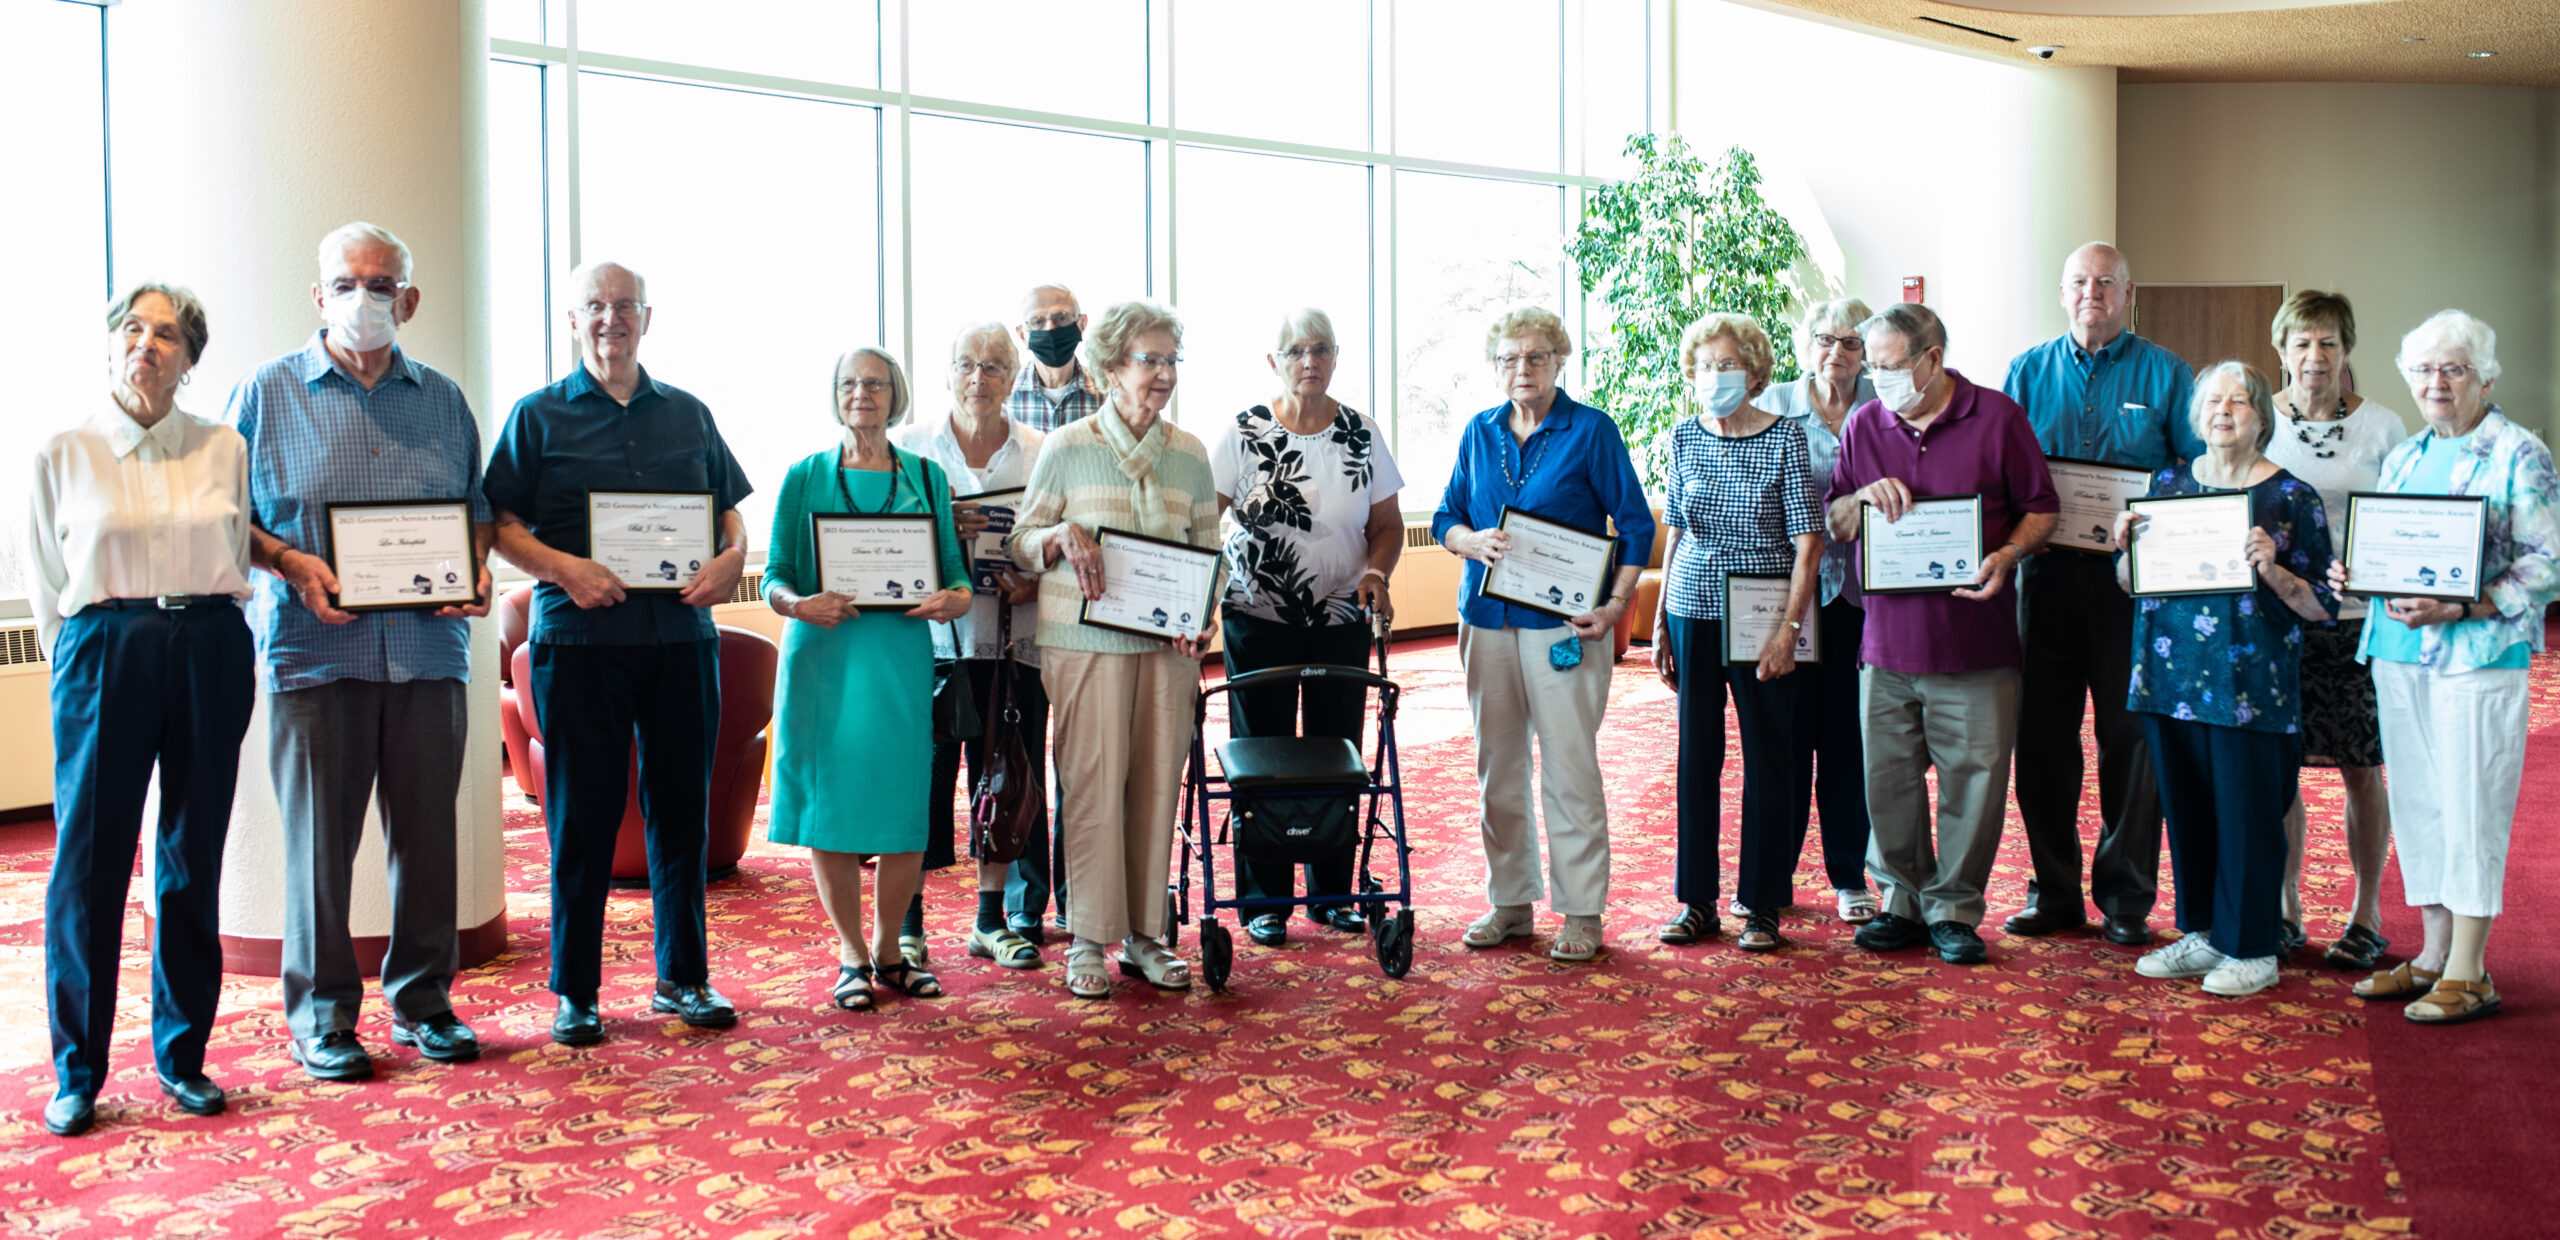 Un grupo de ancianos en fila sosteniendo premios enmarcados 8x10 que han recibido  